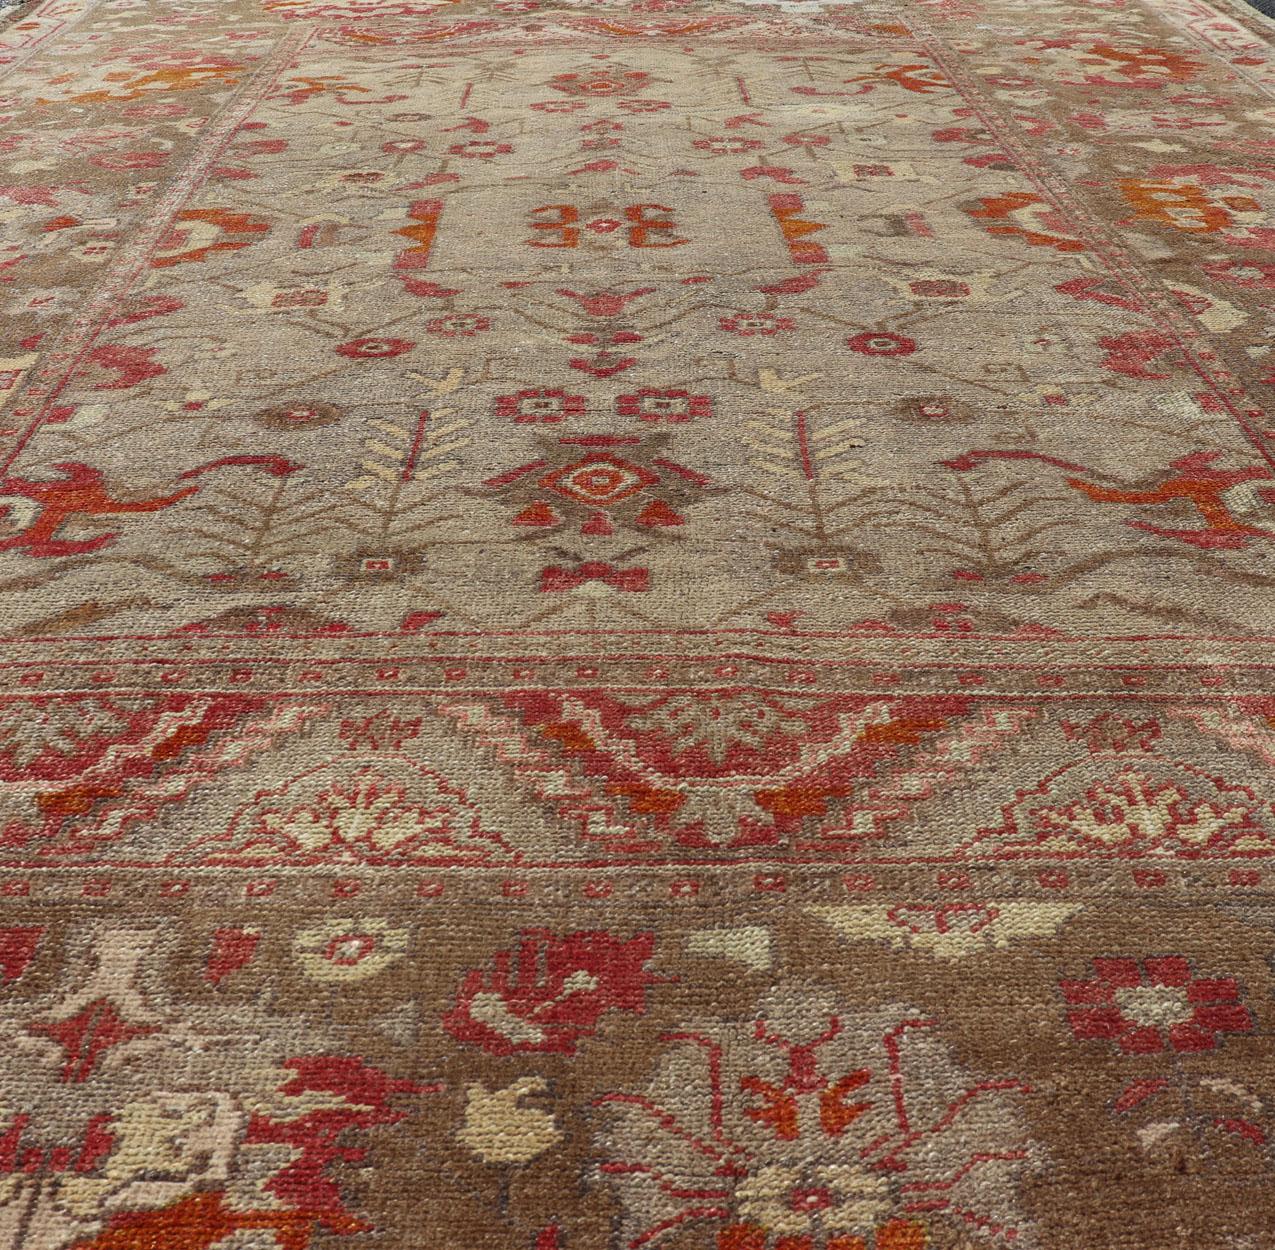 Quadratischer antiker türkischer Oushak-Teppich mit Blumenmuster in Grün, Rot, Taupe und Hellbraun (20. Jahrhundert)